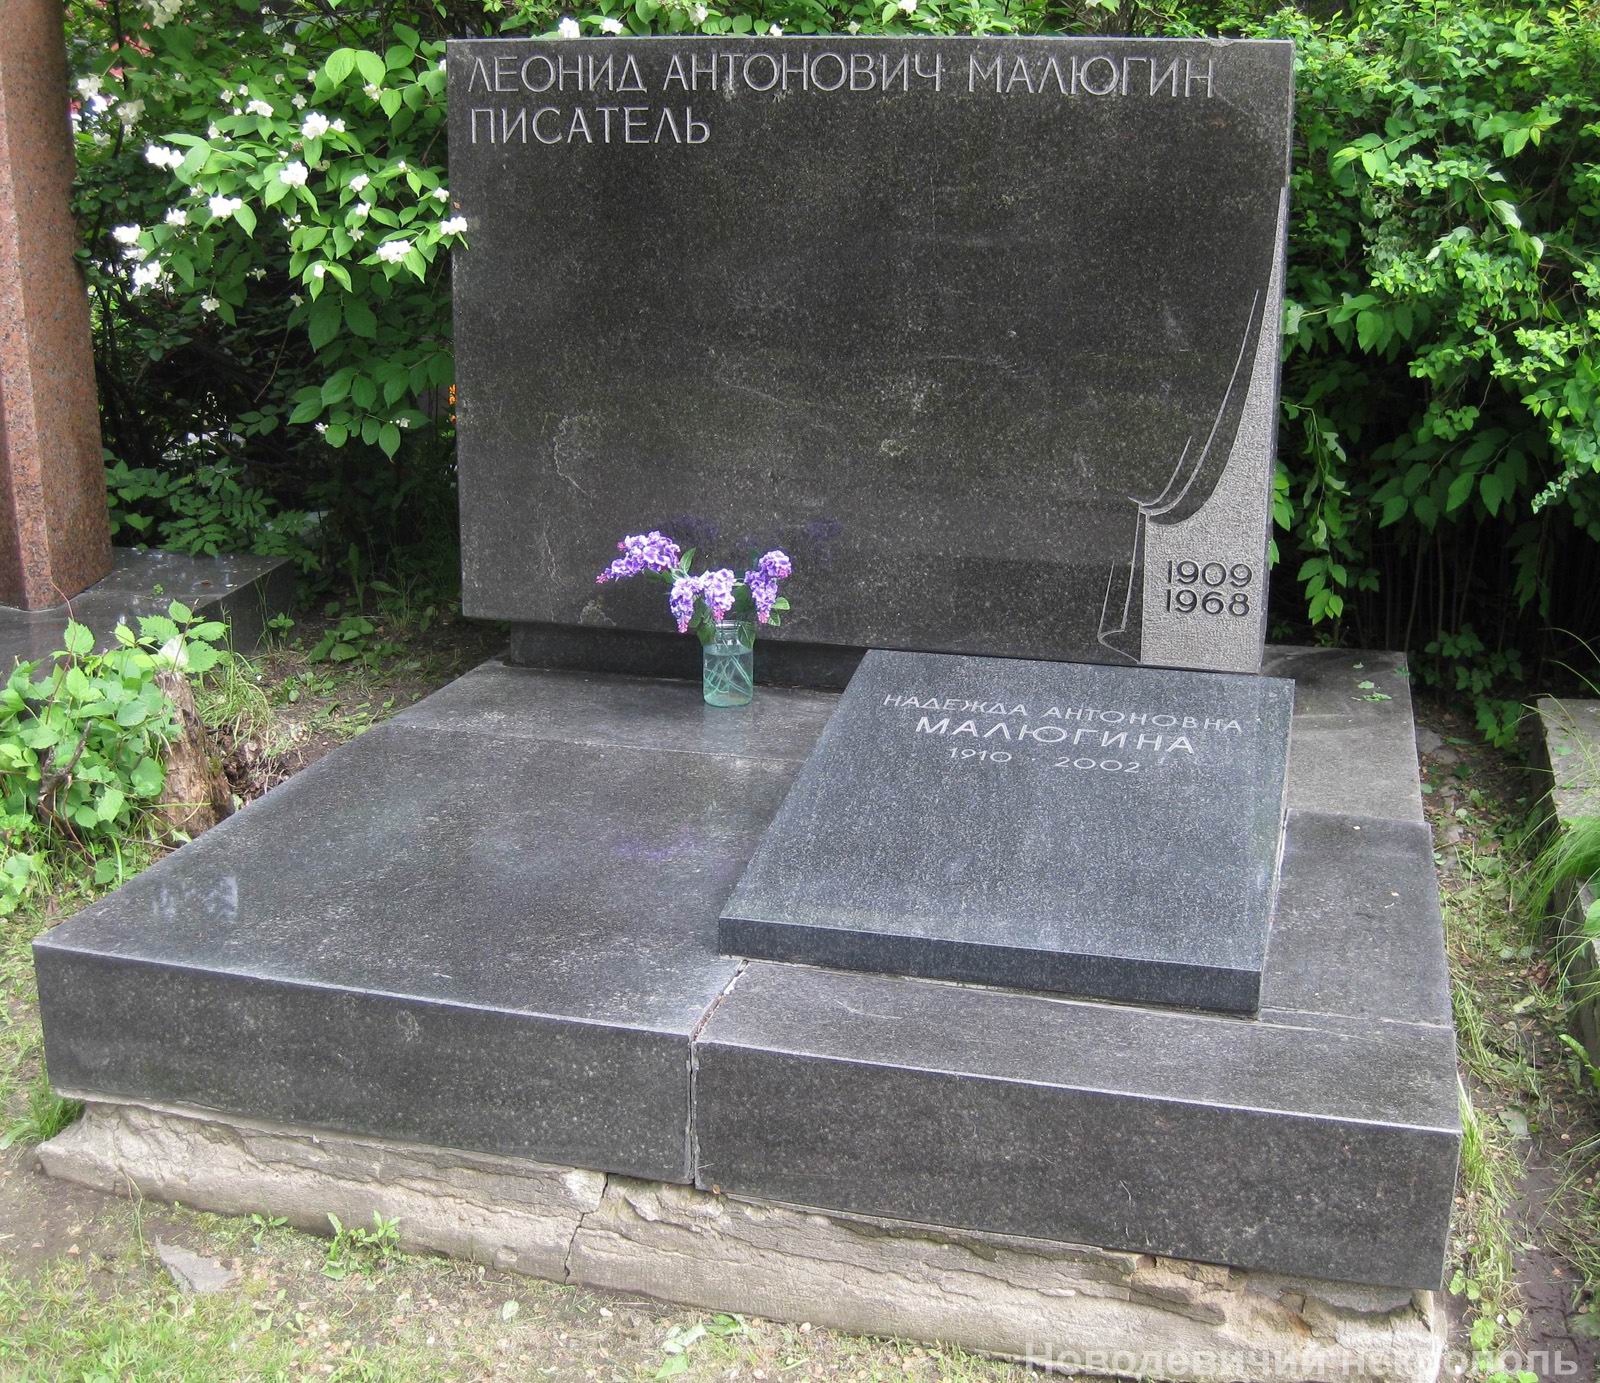 Памятник на могиле Малюгина Л.А. (1909-1968), арх. Ю.Лапин, на Новодевичьем кладбище (6-8-3).